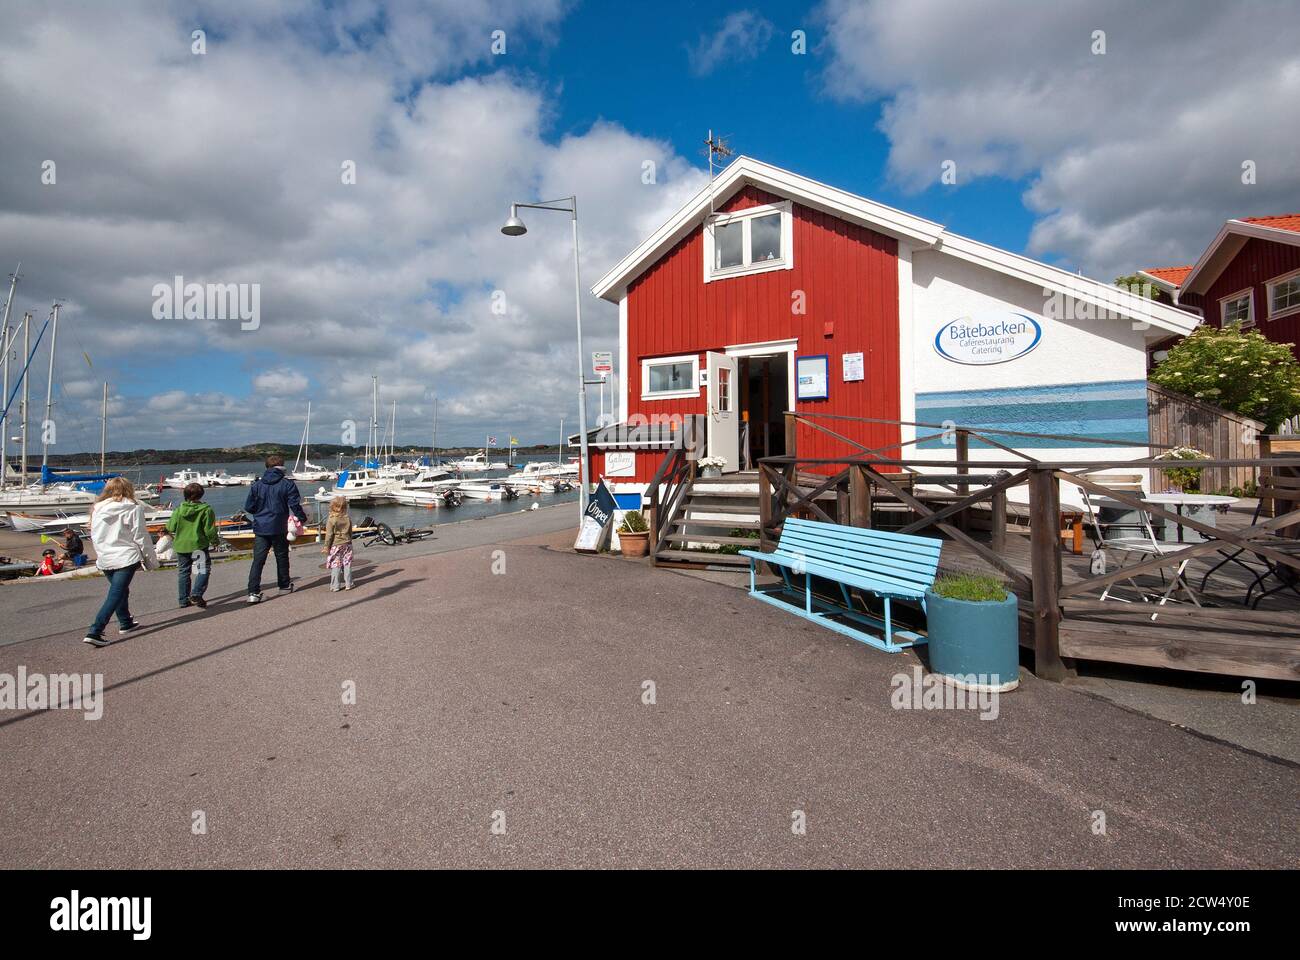 Cafe restaurant Batebacken in Tången village, Styrso Island, Gothenburg  archipelago, Sweden Stock Photo - Alamy